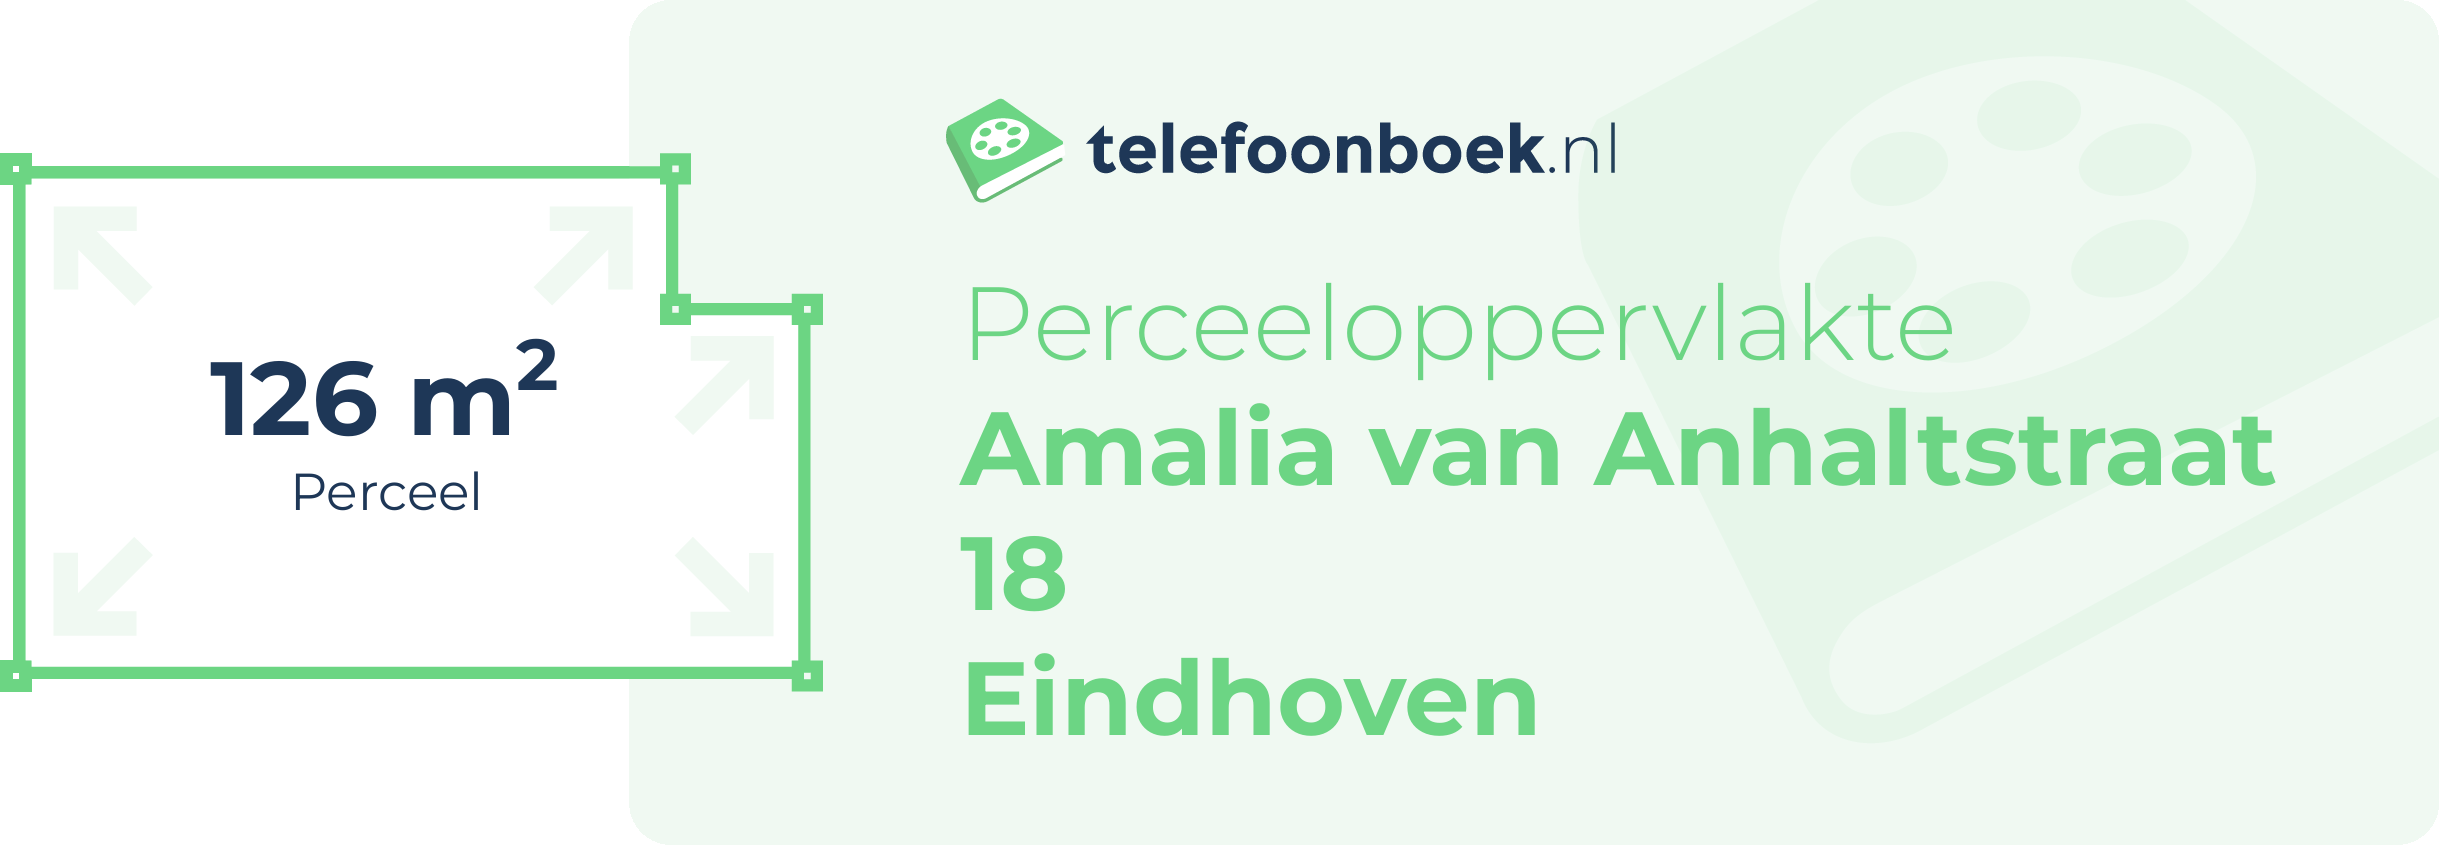 Perceeloppervlakte Amalia Van Anhaltstraat 18 Eindhoven